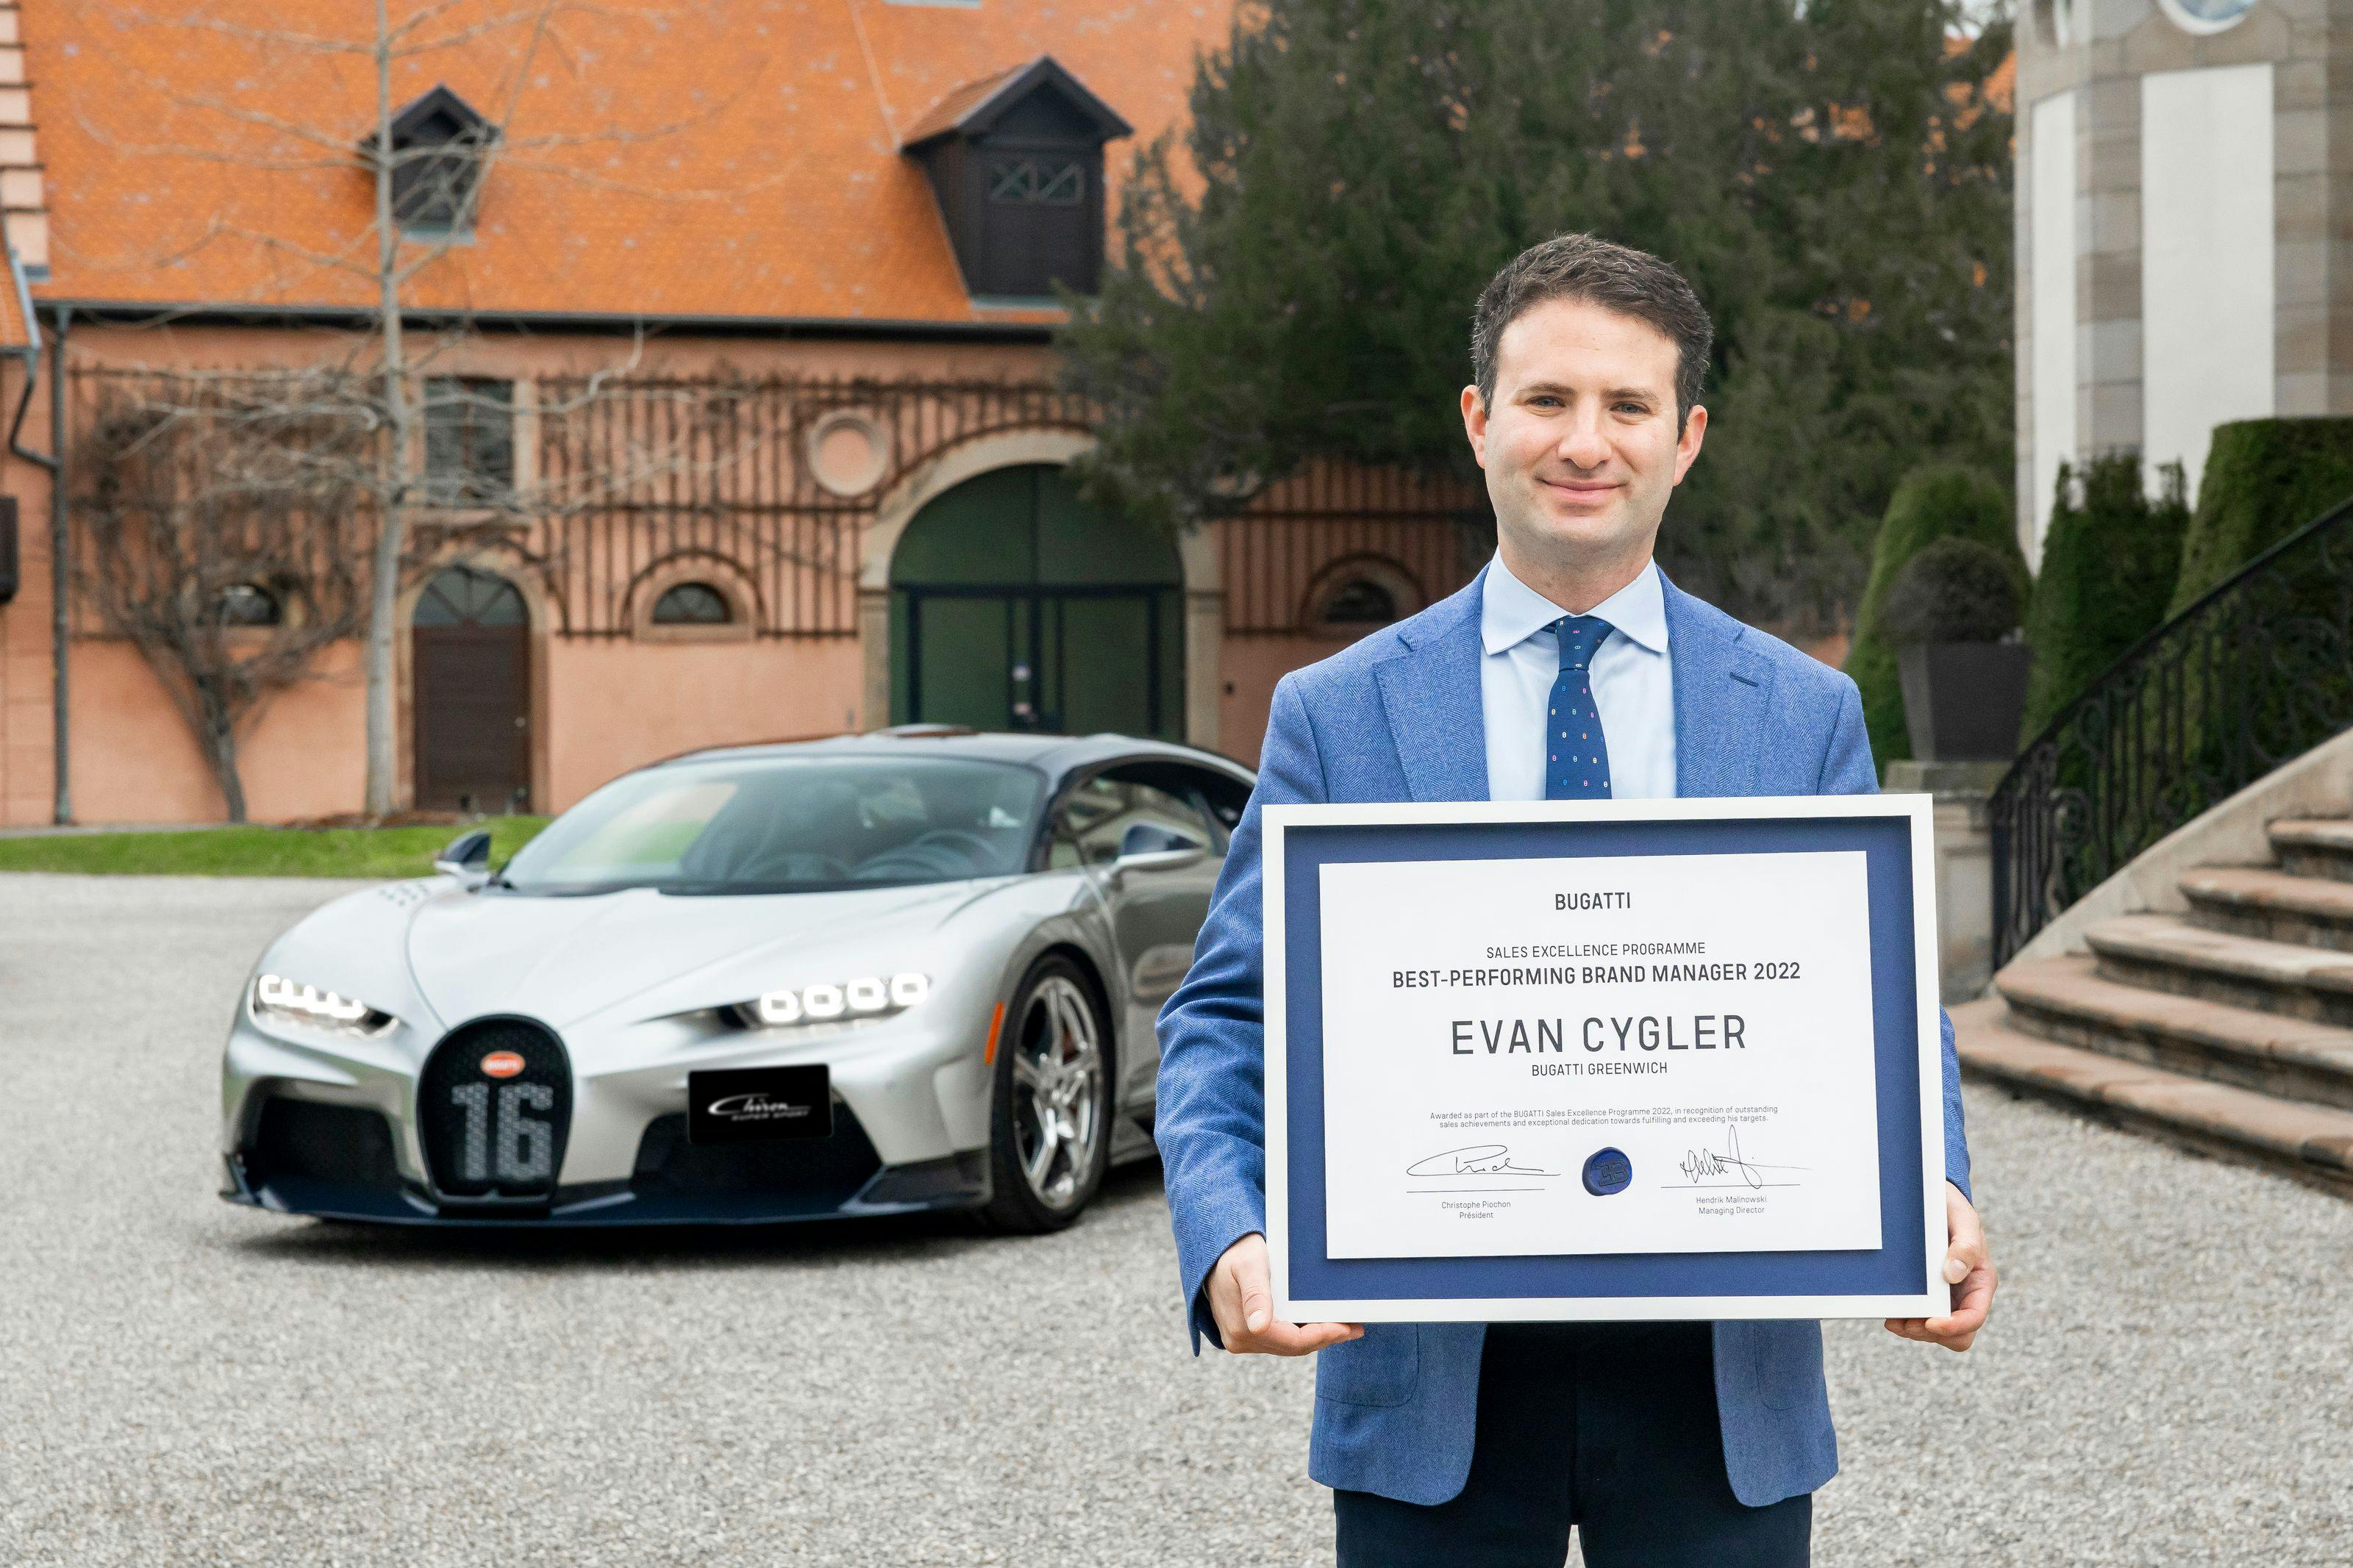 Evan Cygler von Bugatti Greenwich ist Gewinner des Bugatti Sales Excellence Programme 2022